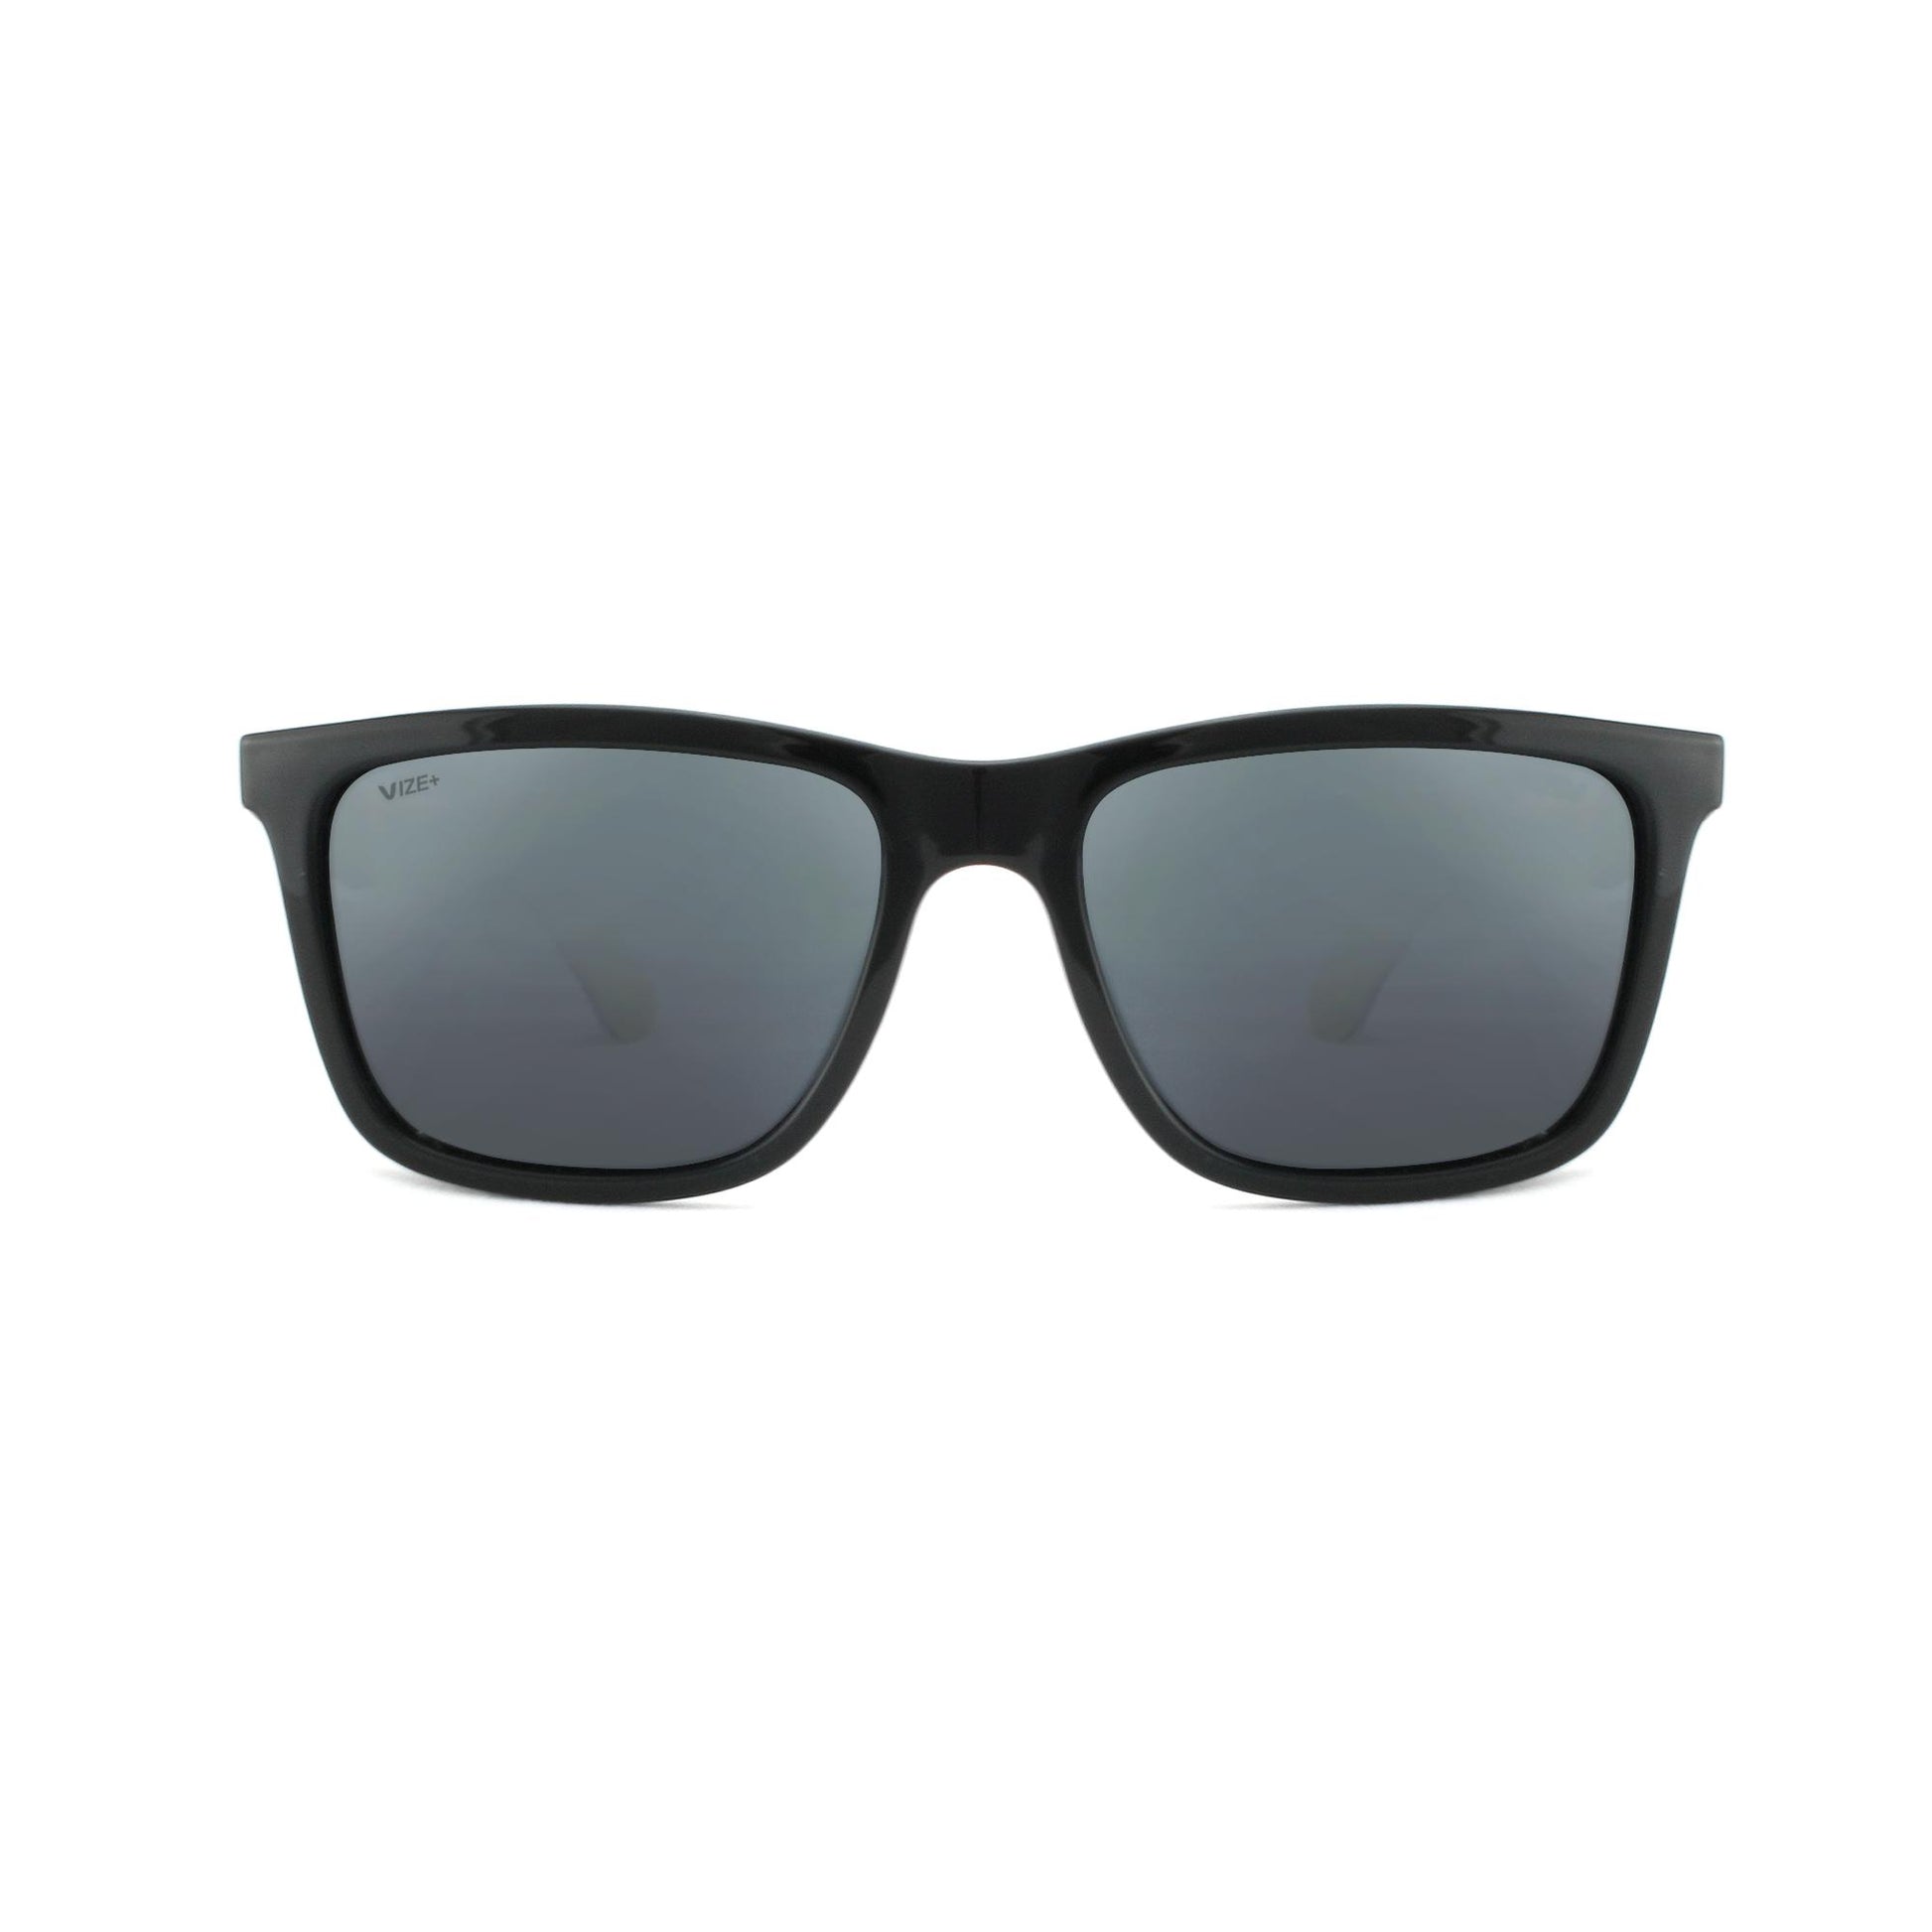 Viento Polarized Sunglasses (Black/Smoke) – Vaikobi